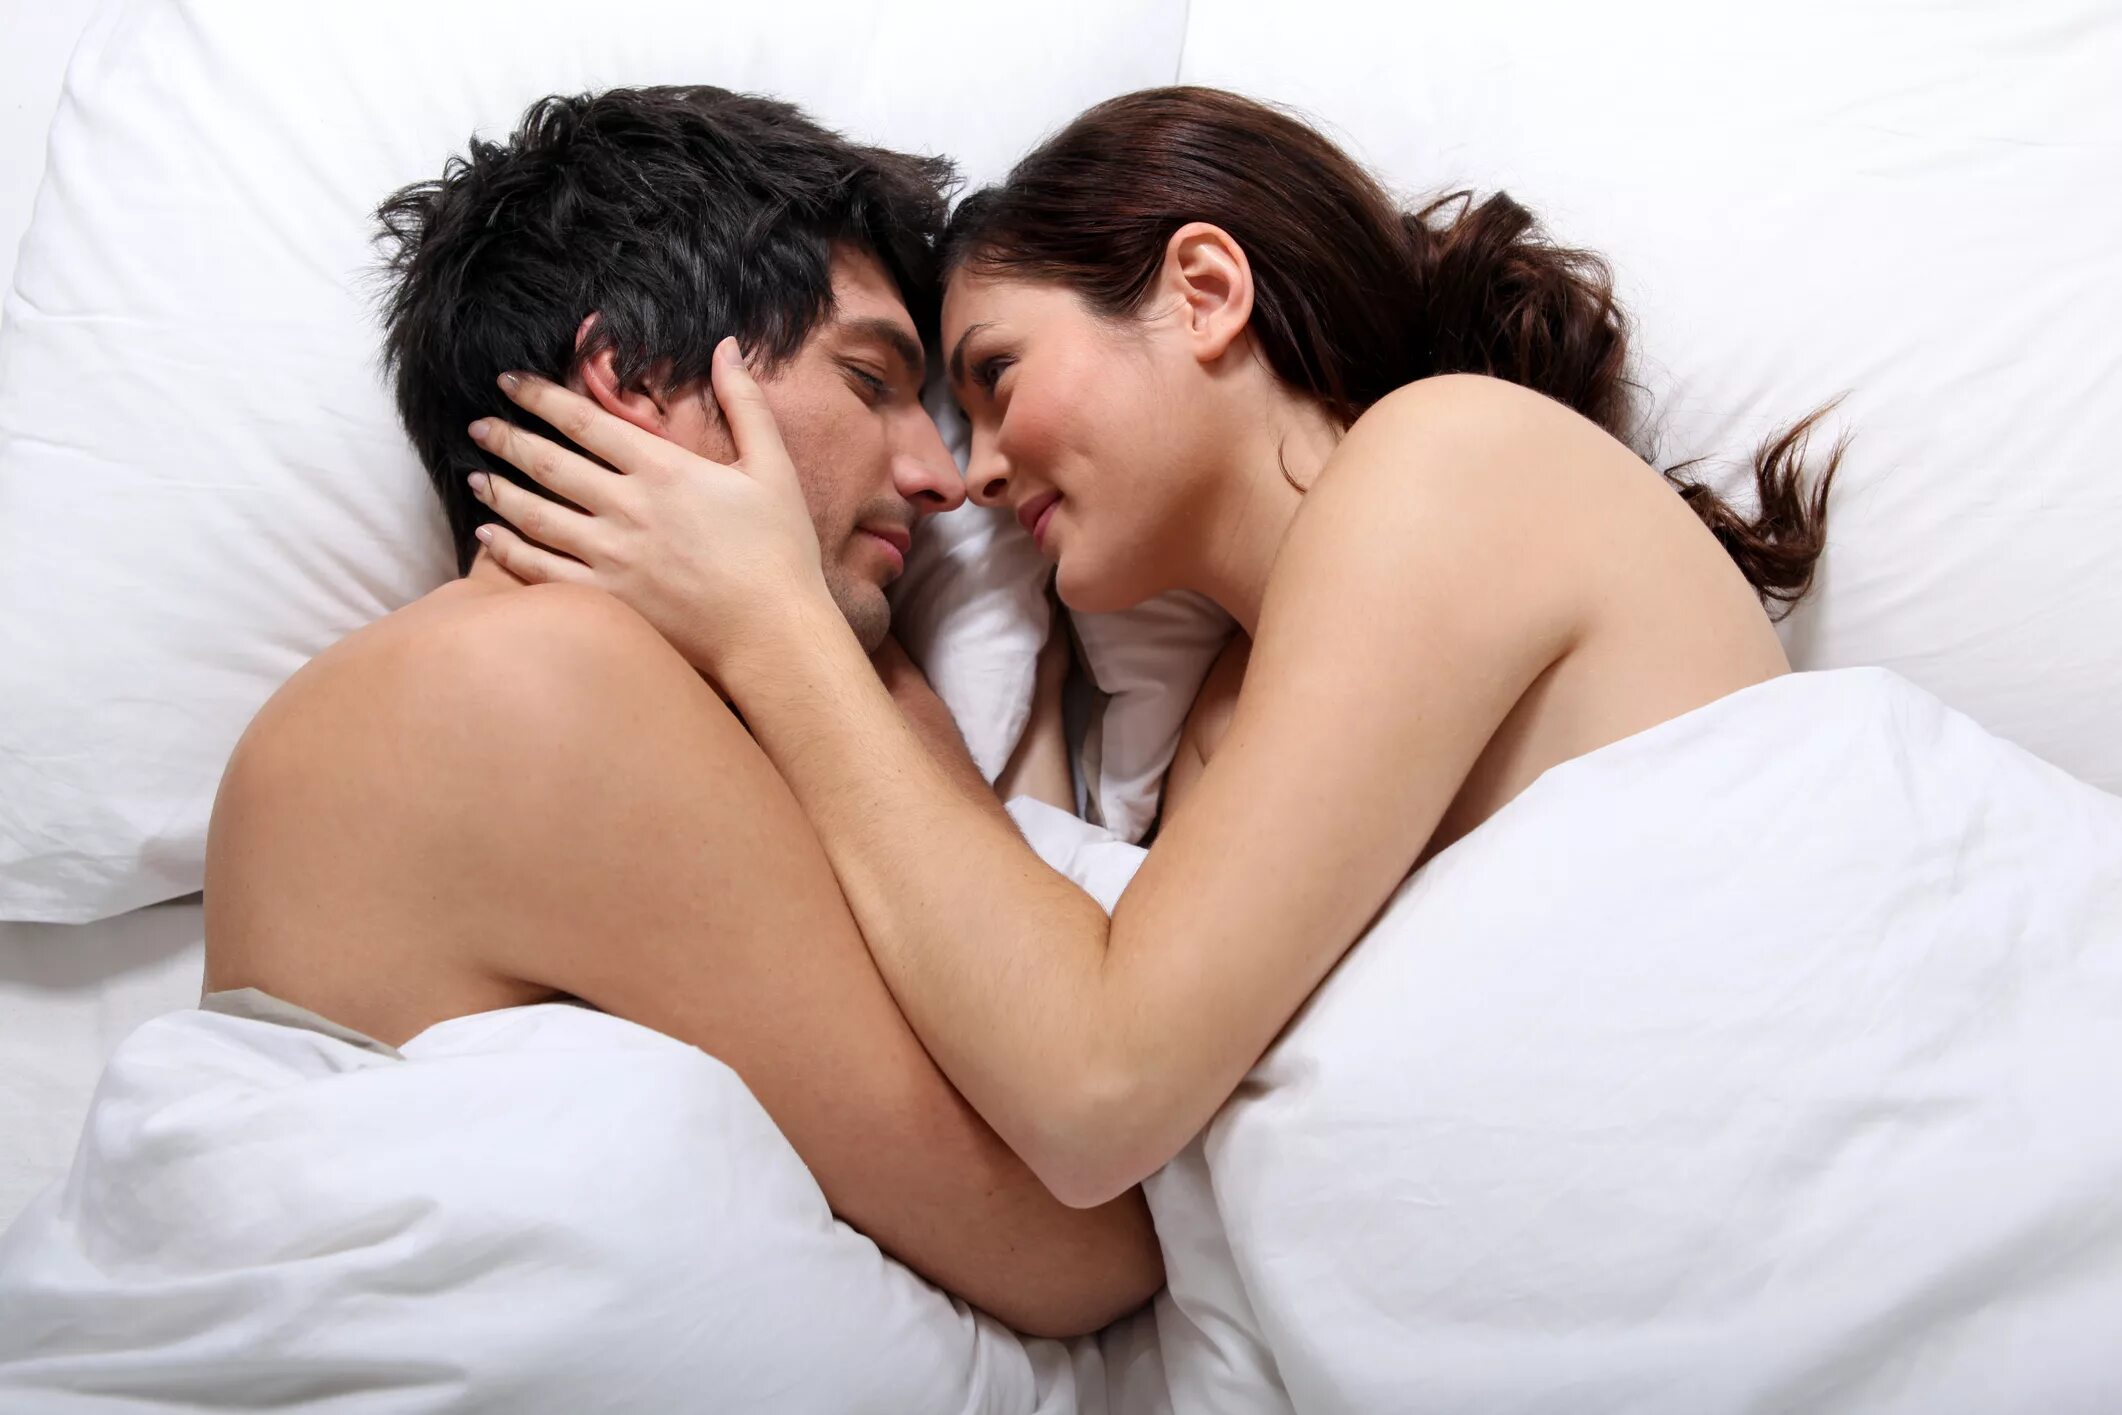 Развратный разговор женщины. Любовные отношения в постели. Мужчина и женщина в постели. Занимаются любовью в кровати.